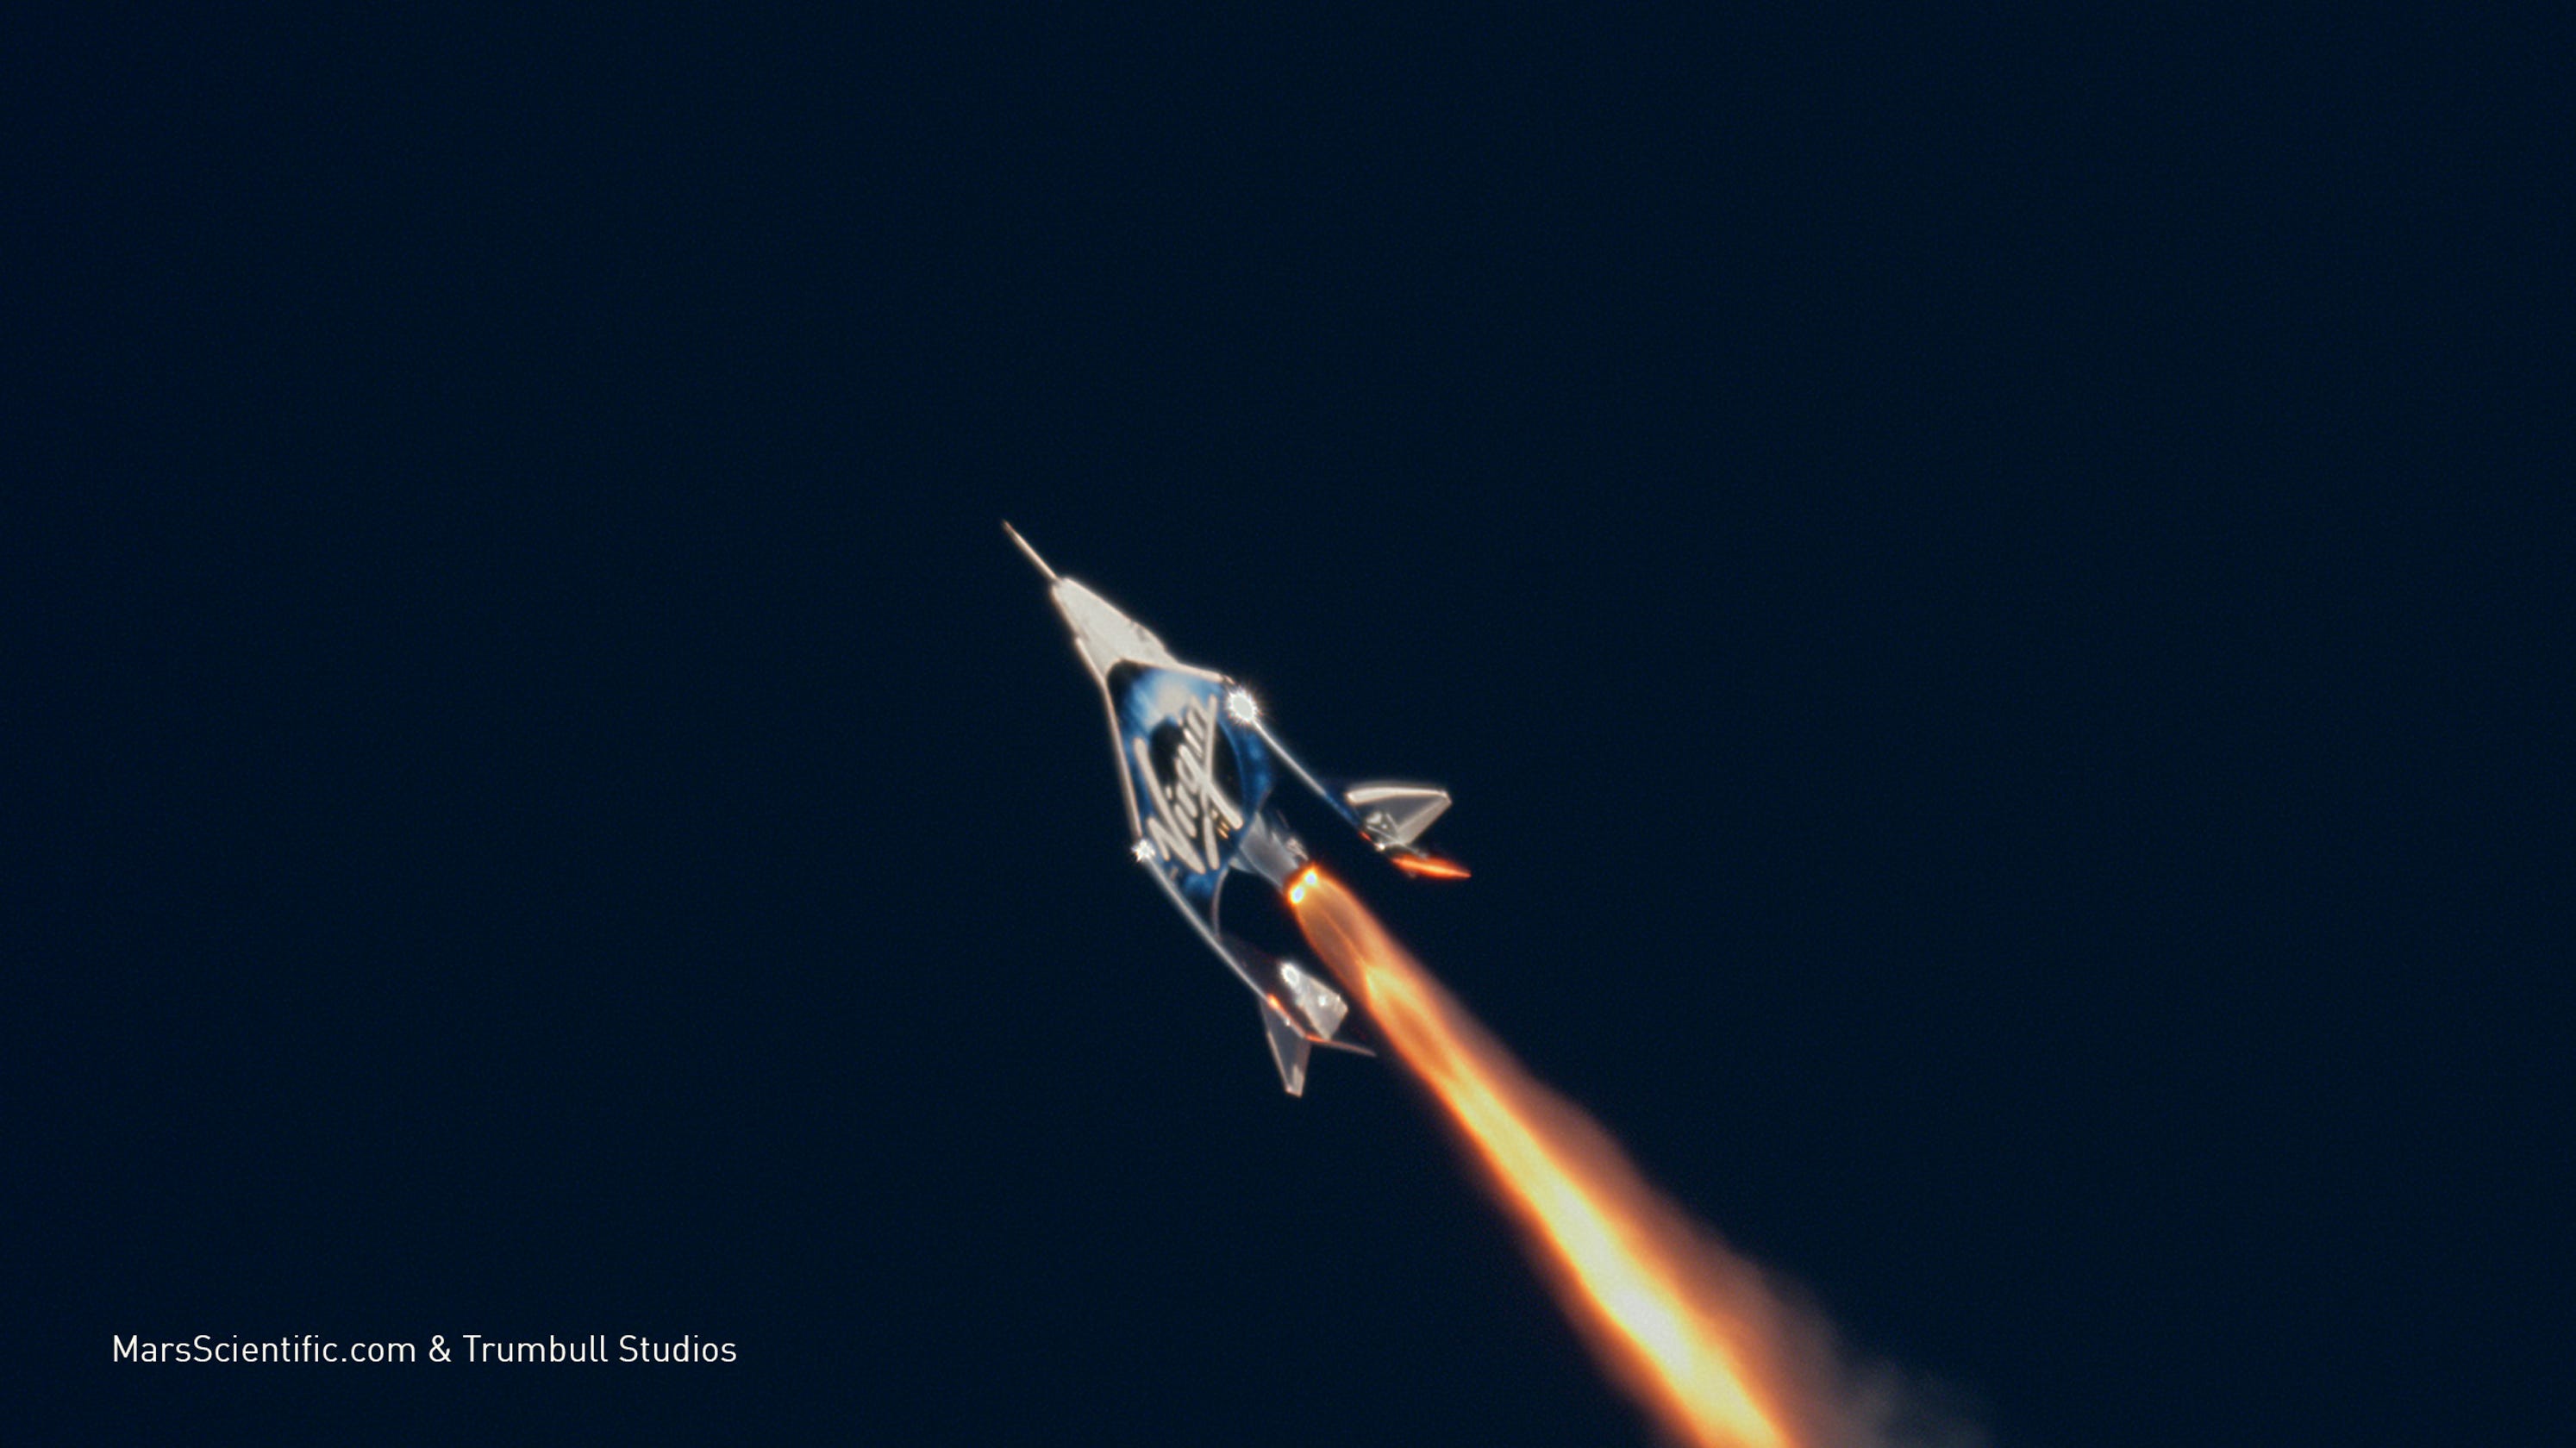 Î‘Ï€Î¿Ï„Î­Î»ÎµÏƒÎ¼Î± ÎµÎ¹ÎºÏŒÎ½Î±Ï‚ Î³Î¹Î± Virgin Galactic Makes Space for Second Time in Ten Weeks with Three On Board, Reaching Higher Altitudes and Faster Speeds, as Flight Test Program Continues